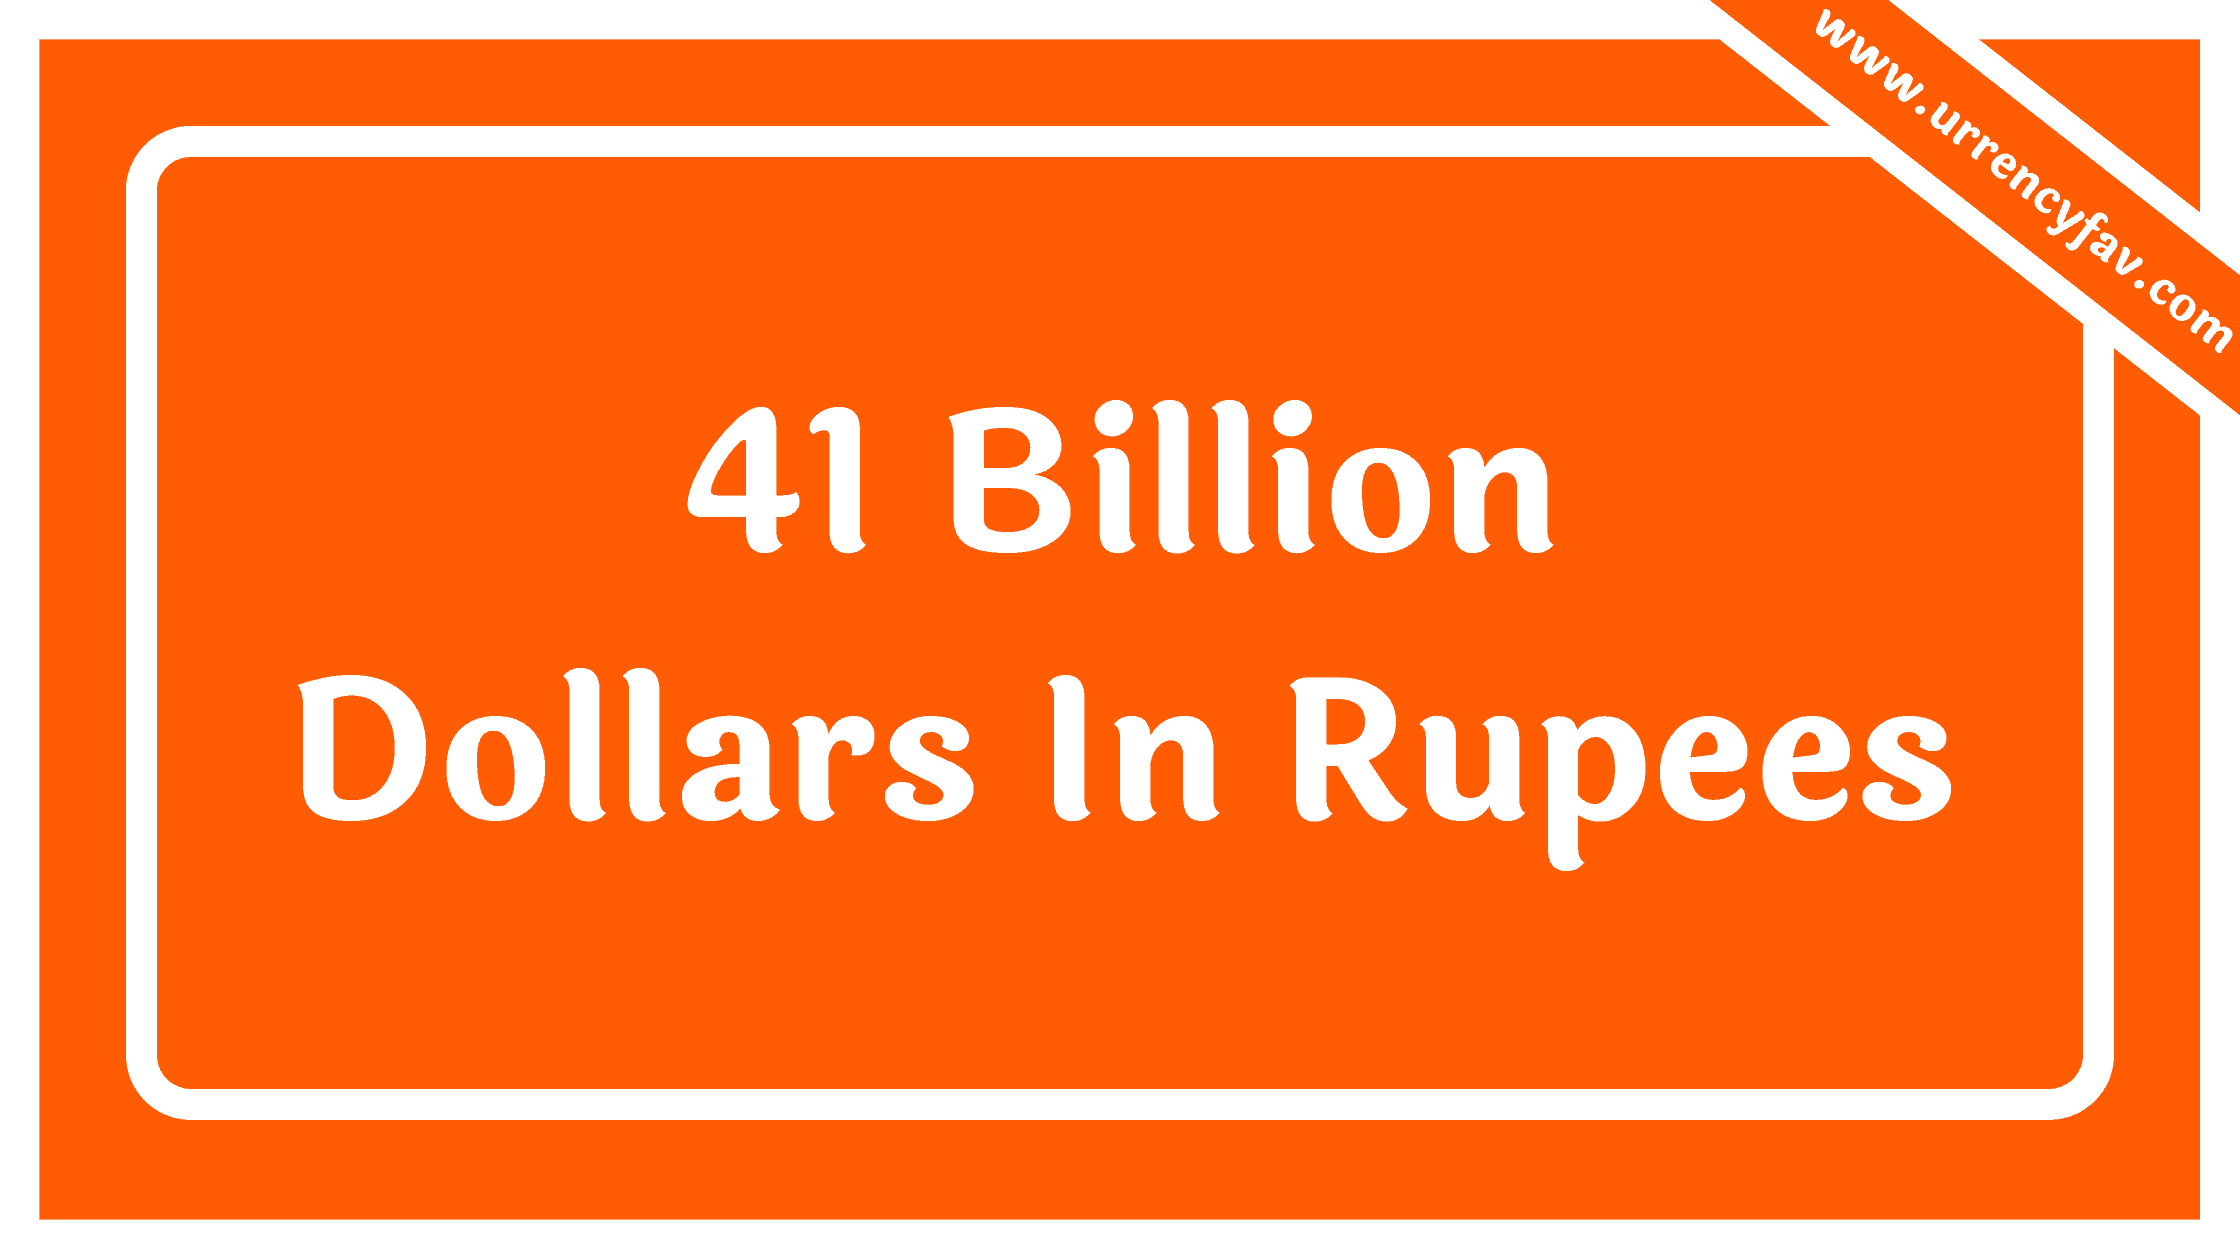 41 Billion Dollars In Rupees